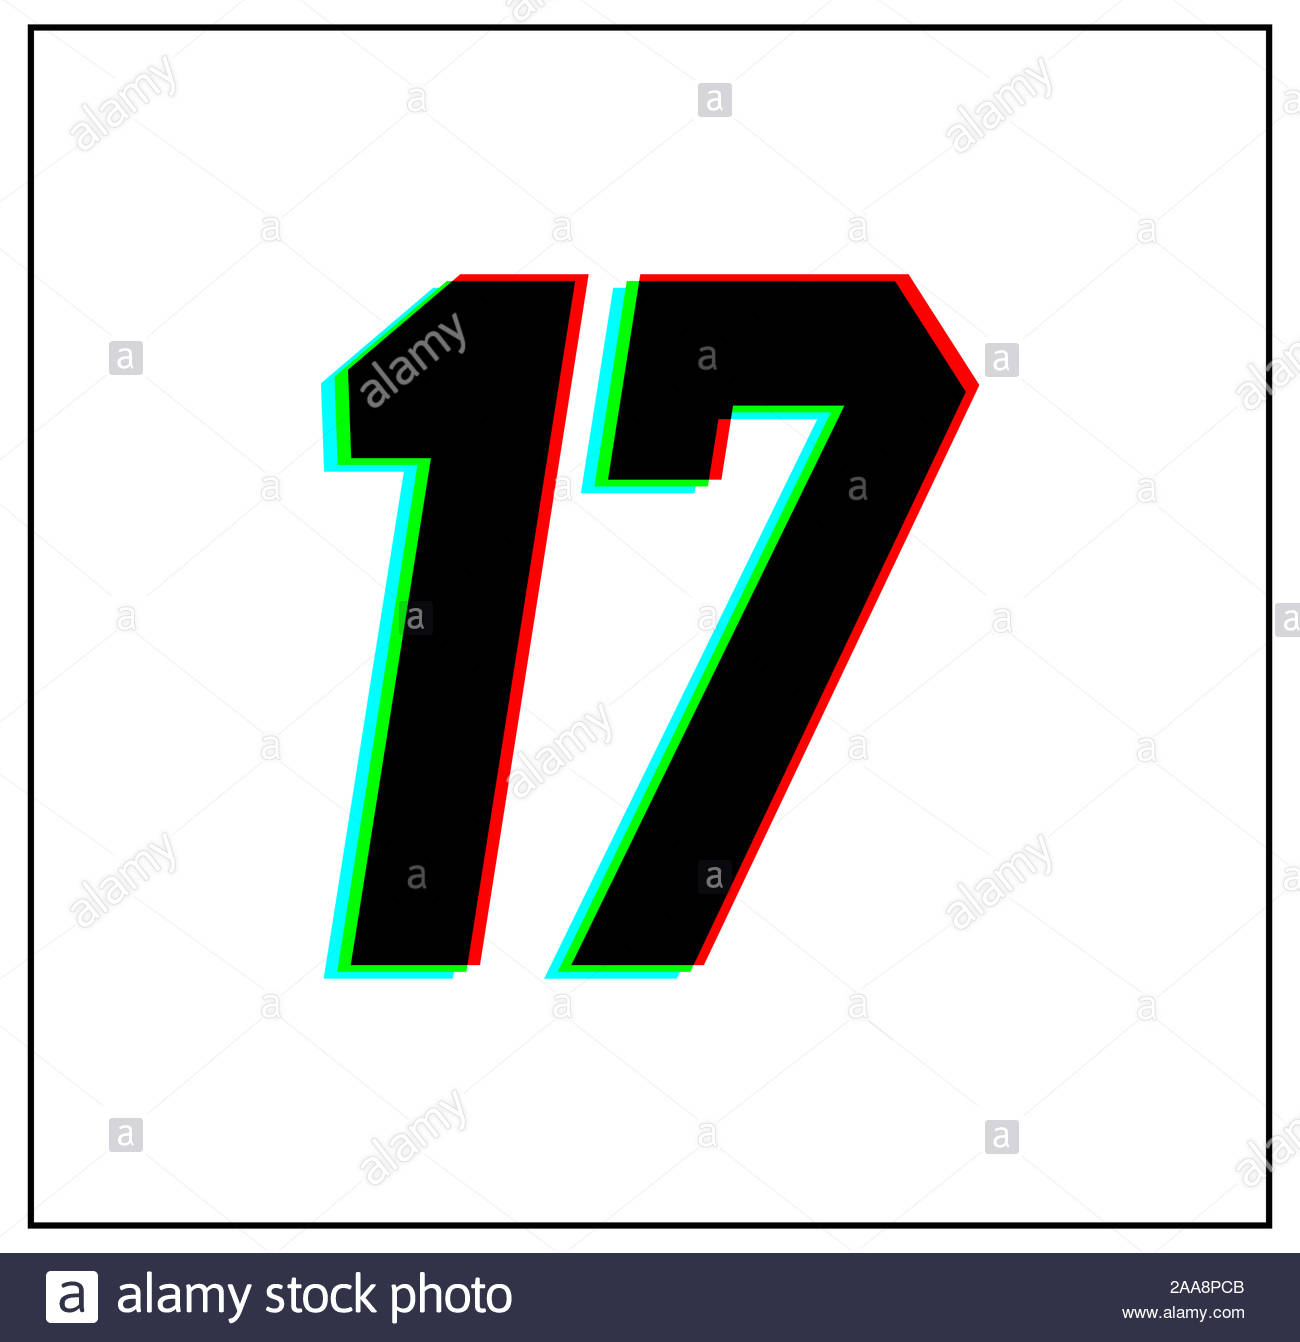 El Numero 17 Dinamico Split Diseno Y Color De Fuente Unica La